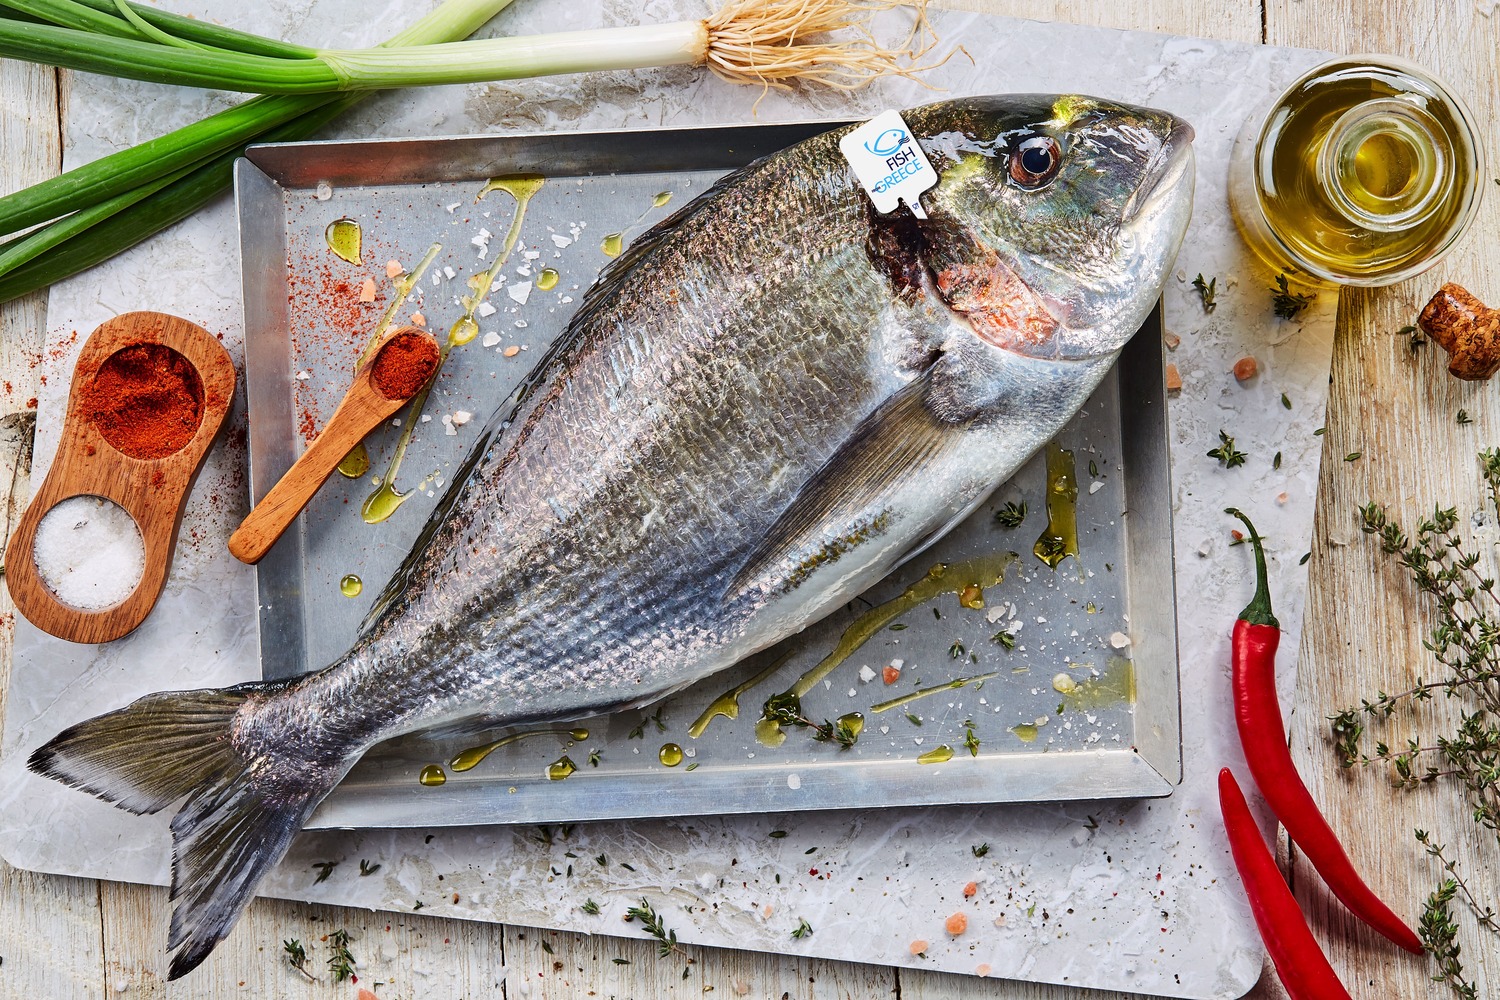 Tutta la freschezza e la qualità del pesce fresco d’acquacoltura greca Fish from Greece per una pausa pranzo sana, gustosa e a prova di rientro